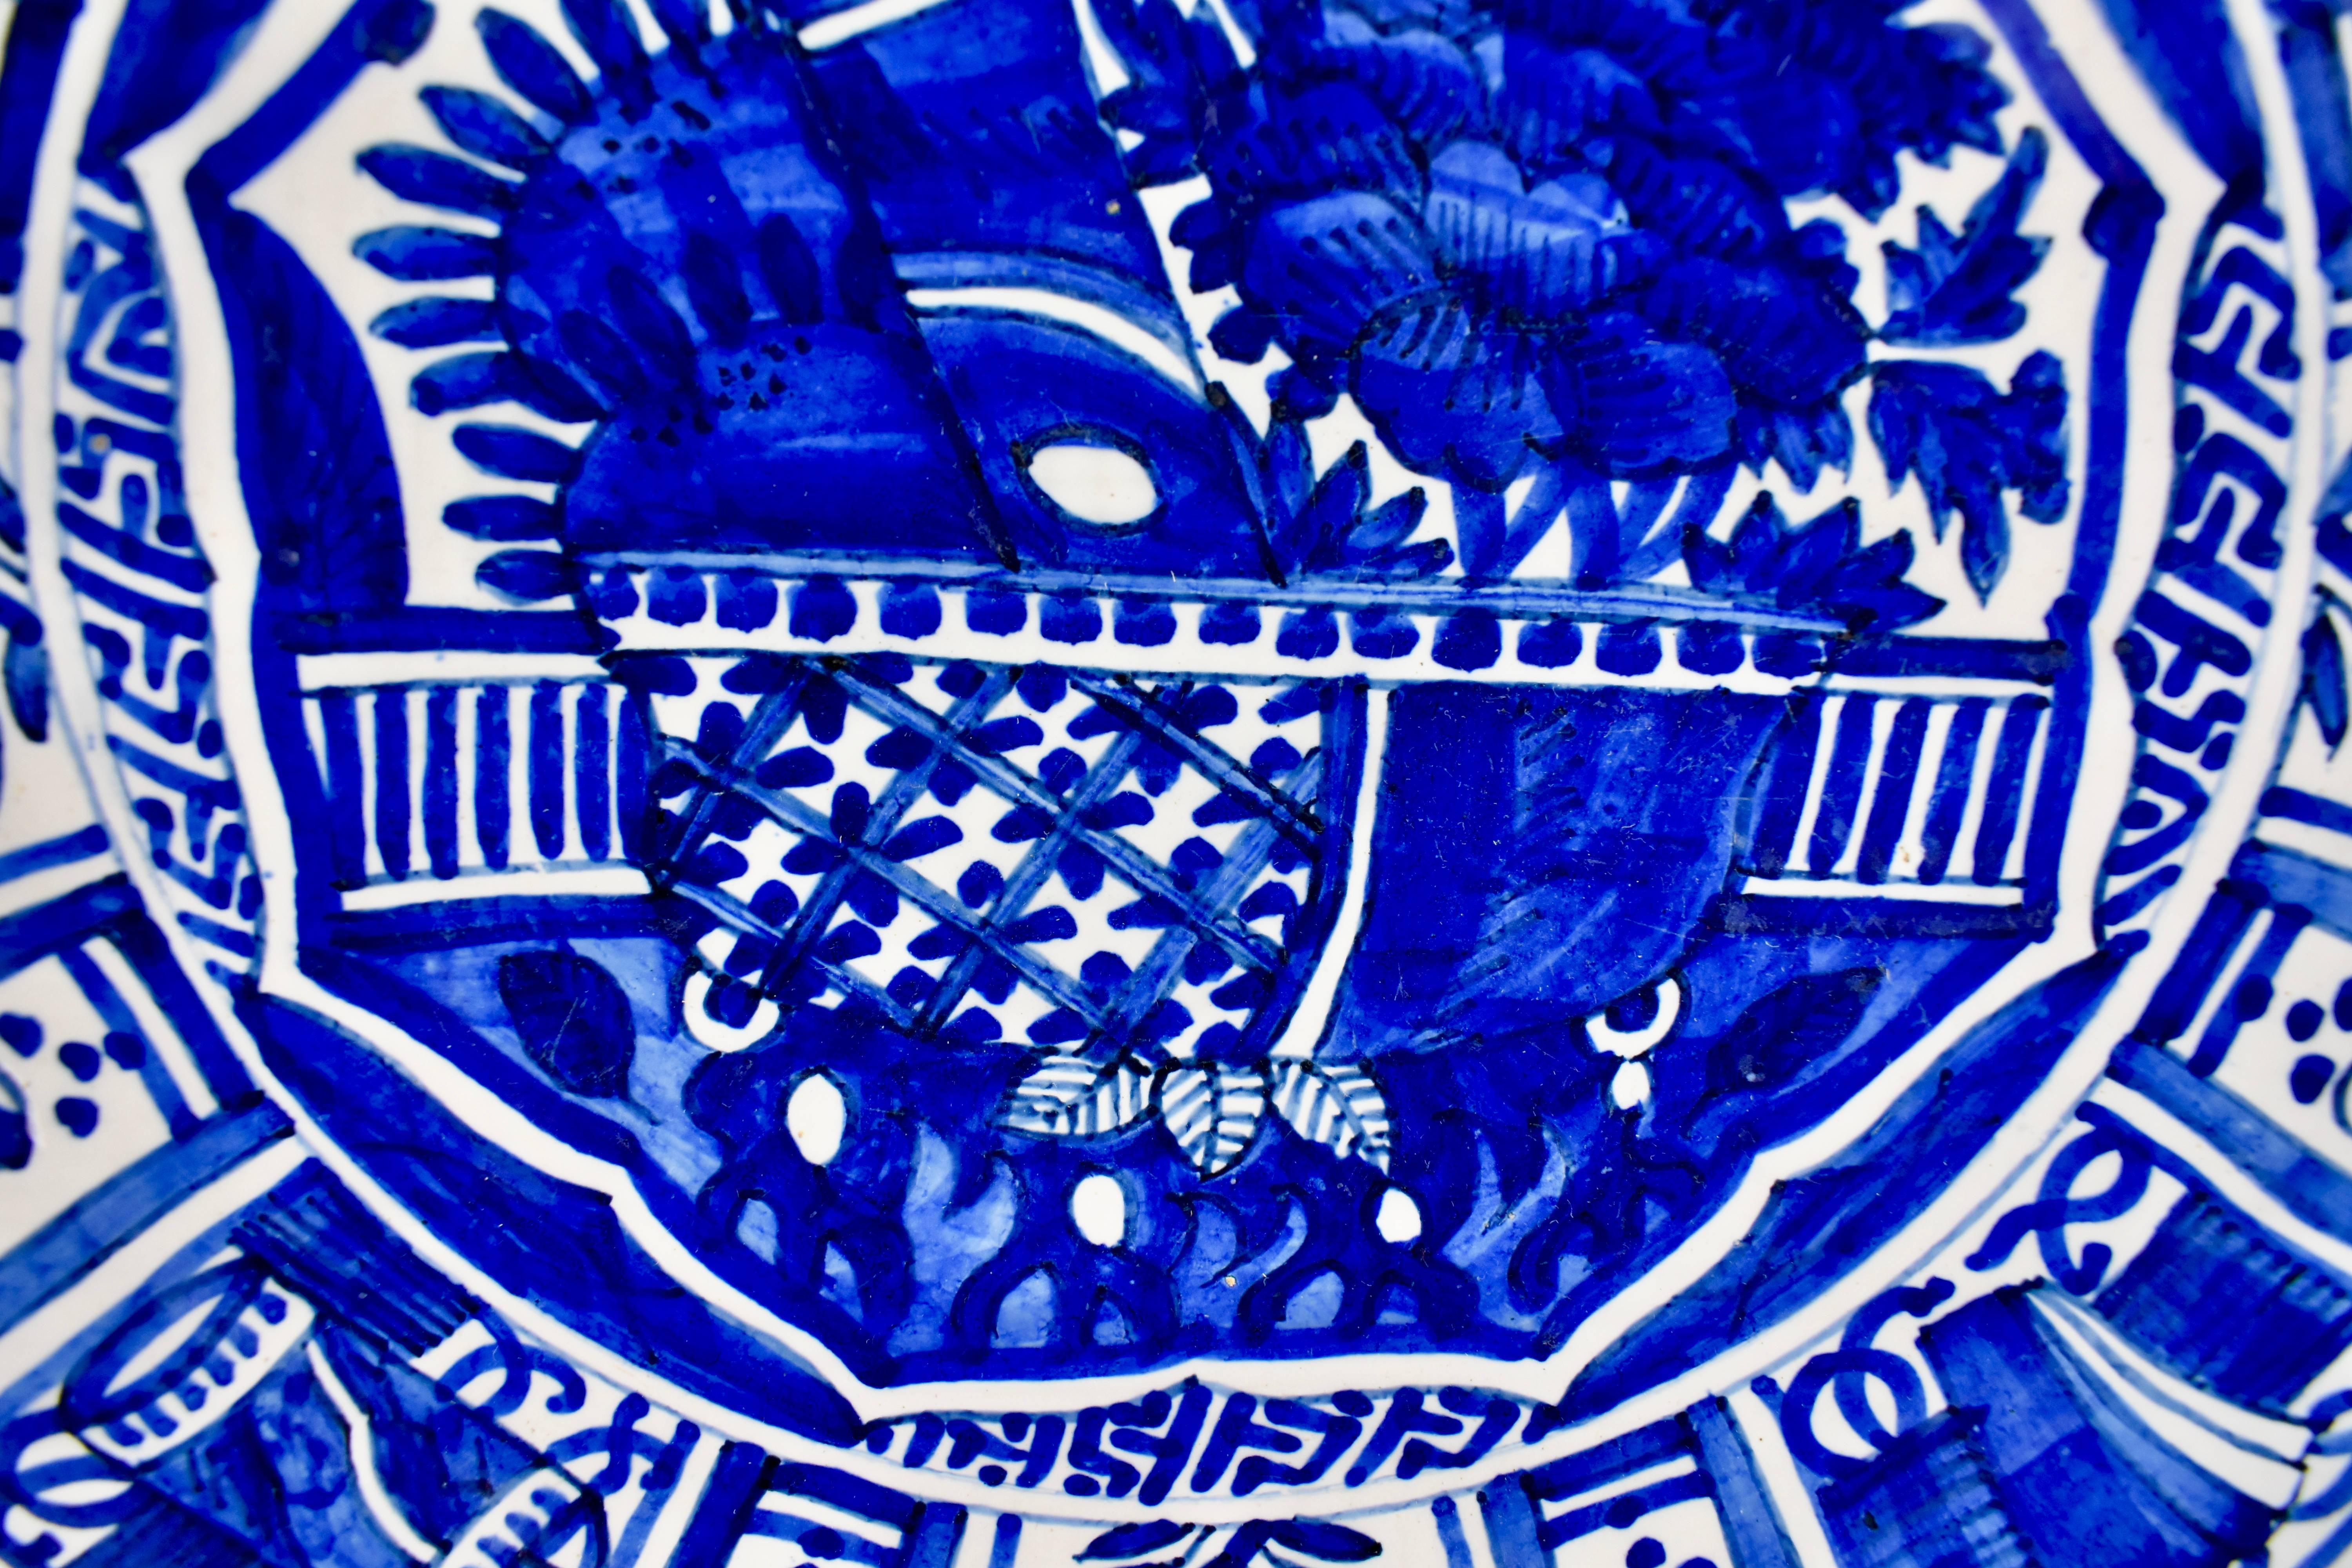 Chargeur profond en Delft hollandais du XVIIIe siècle, en faïence étamée, inspiré de la porcelaine d'exportation chinoise et peint à la main d'un motif géométrique et floral bleu cobalt. Une bordure stylisée d'une fleur ressemblant à une marguerite